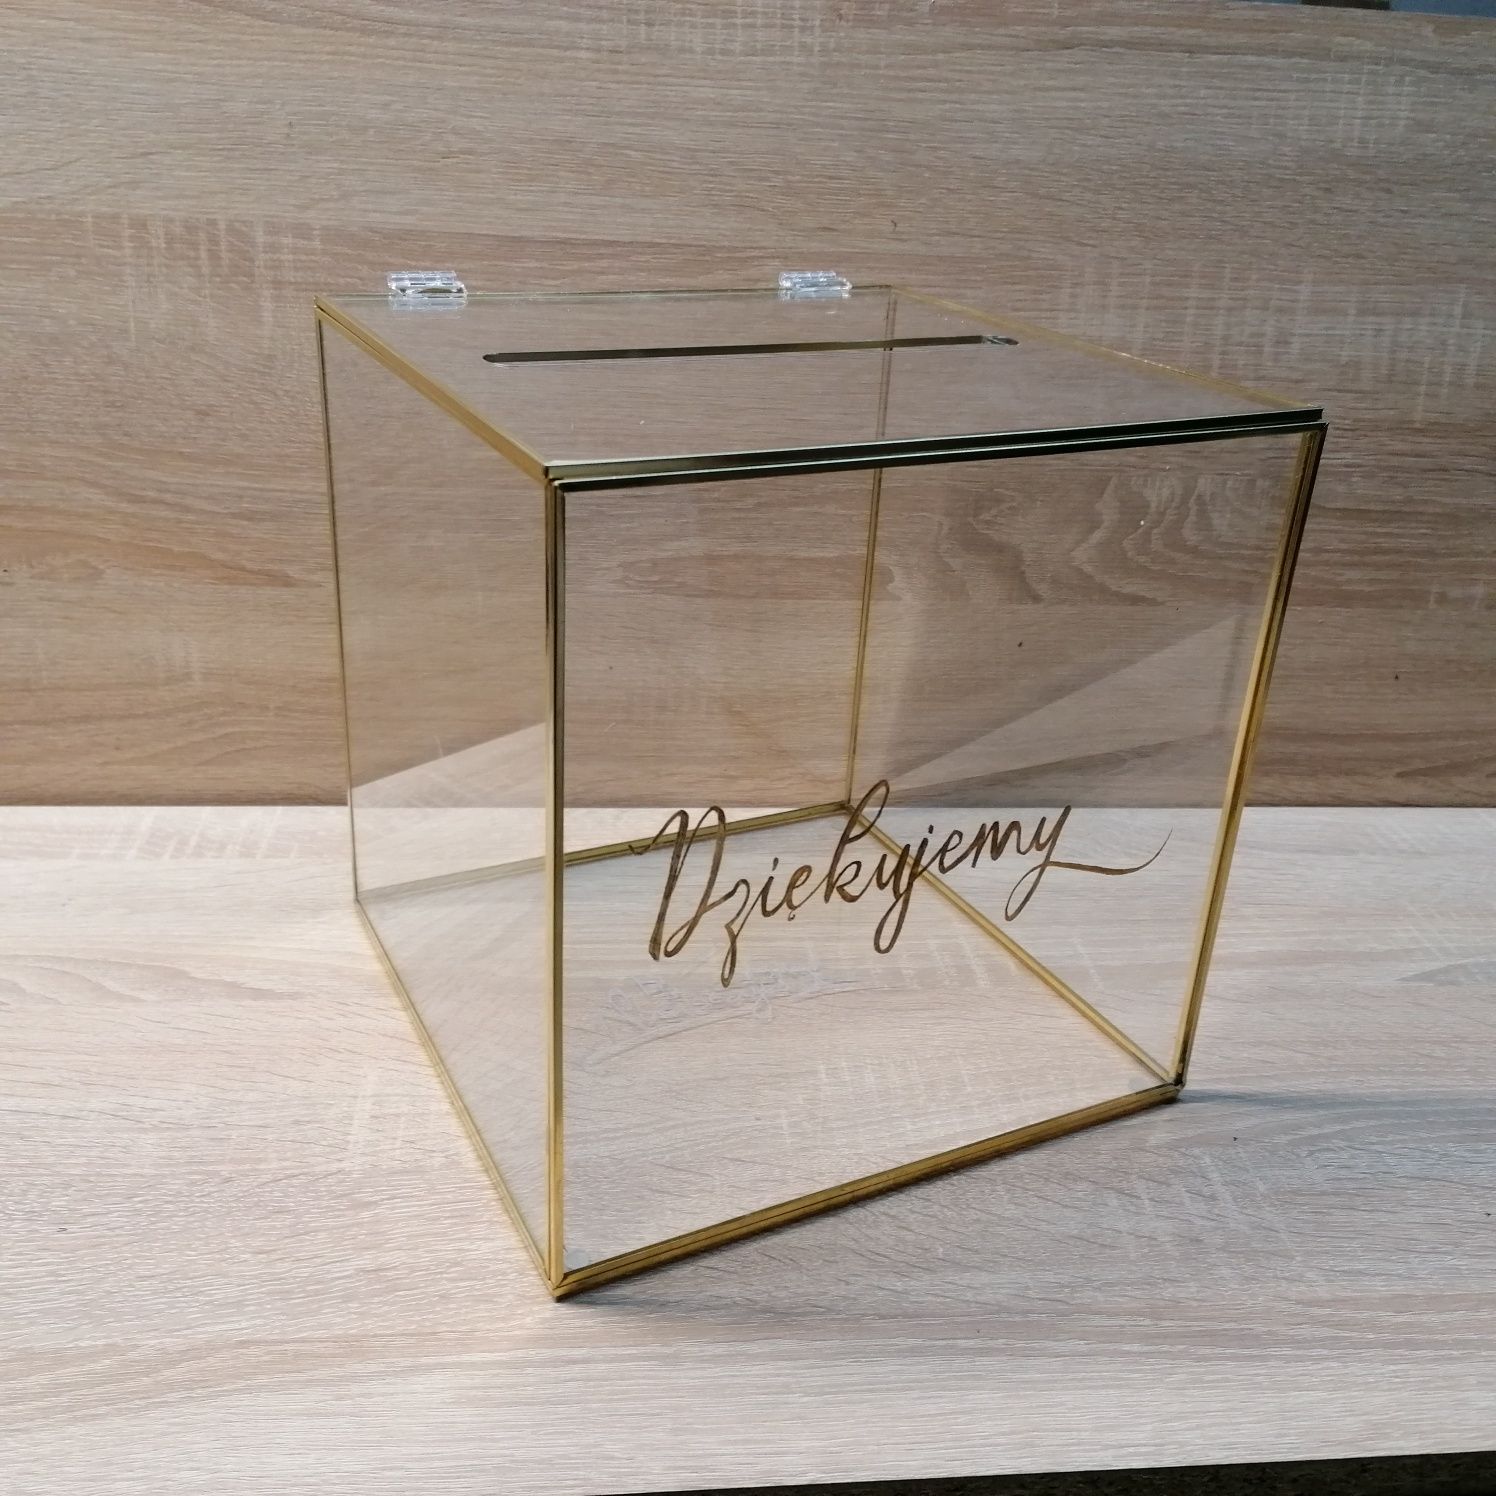 Zestaw ślubny skrzynka pudełko na kartki ślubne obrączki szklane złote